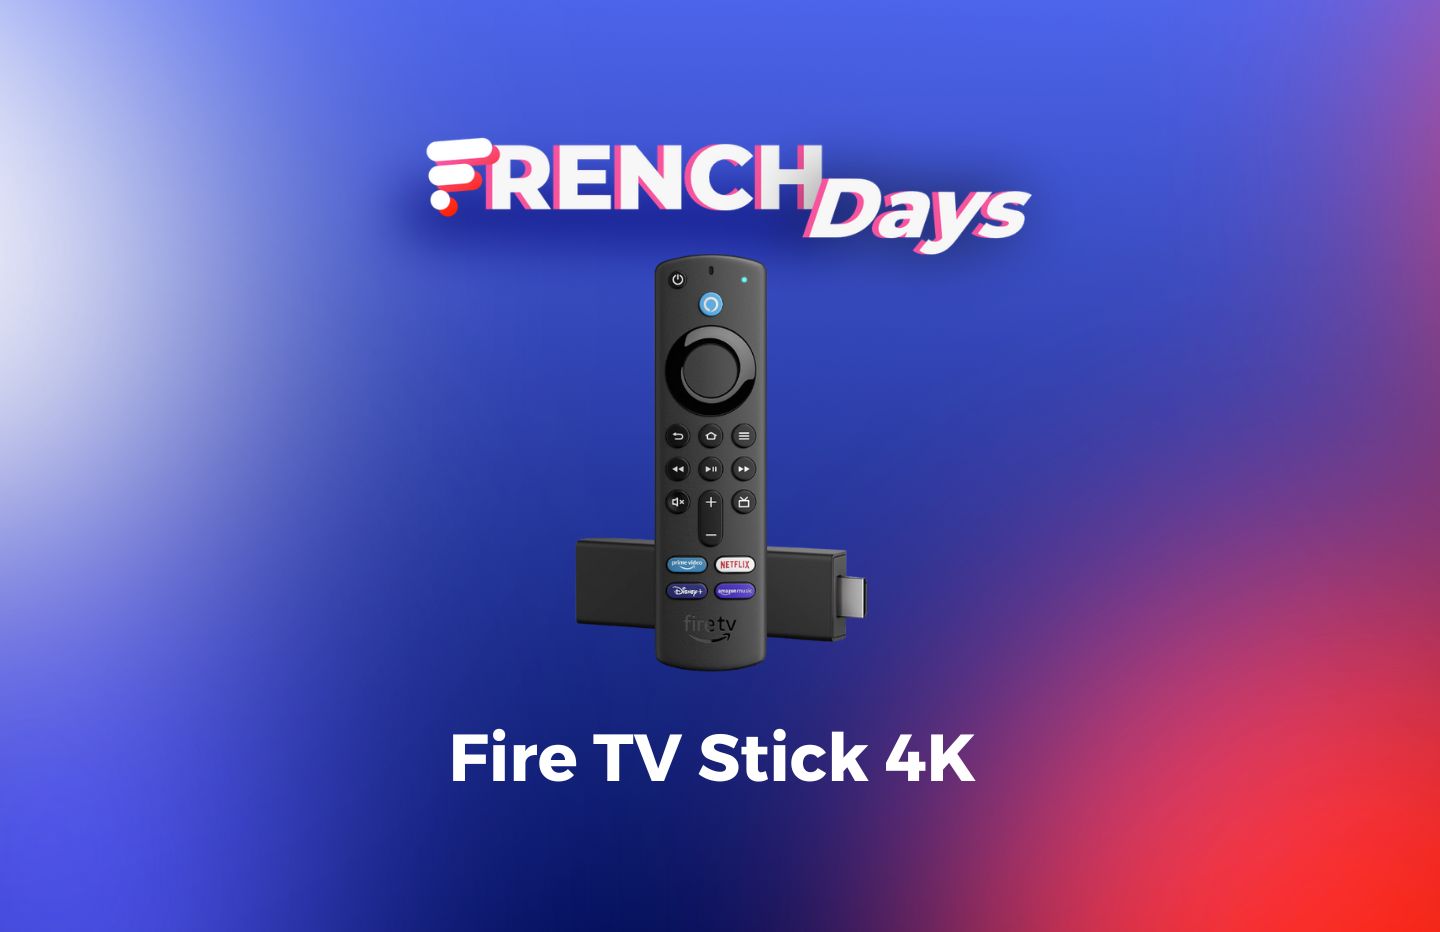 Fire TV Stick : Vite, le Fire TV Stick 4K est disponible à moitié  prix pour une durée limitée